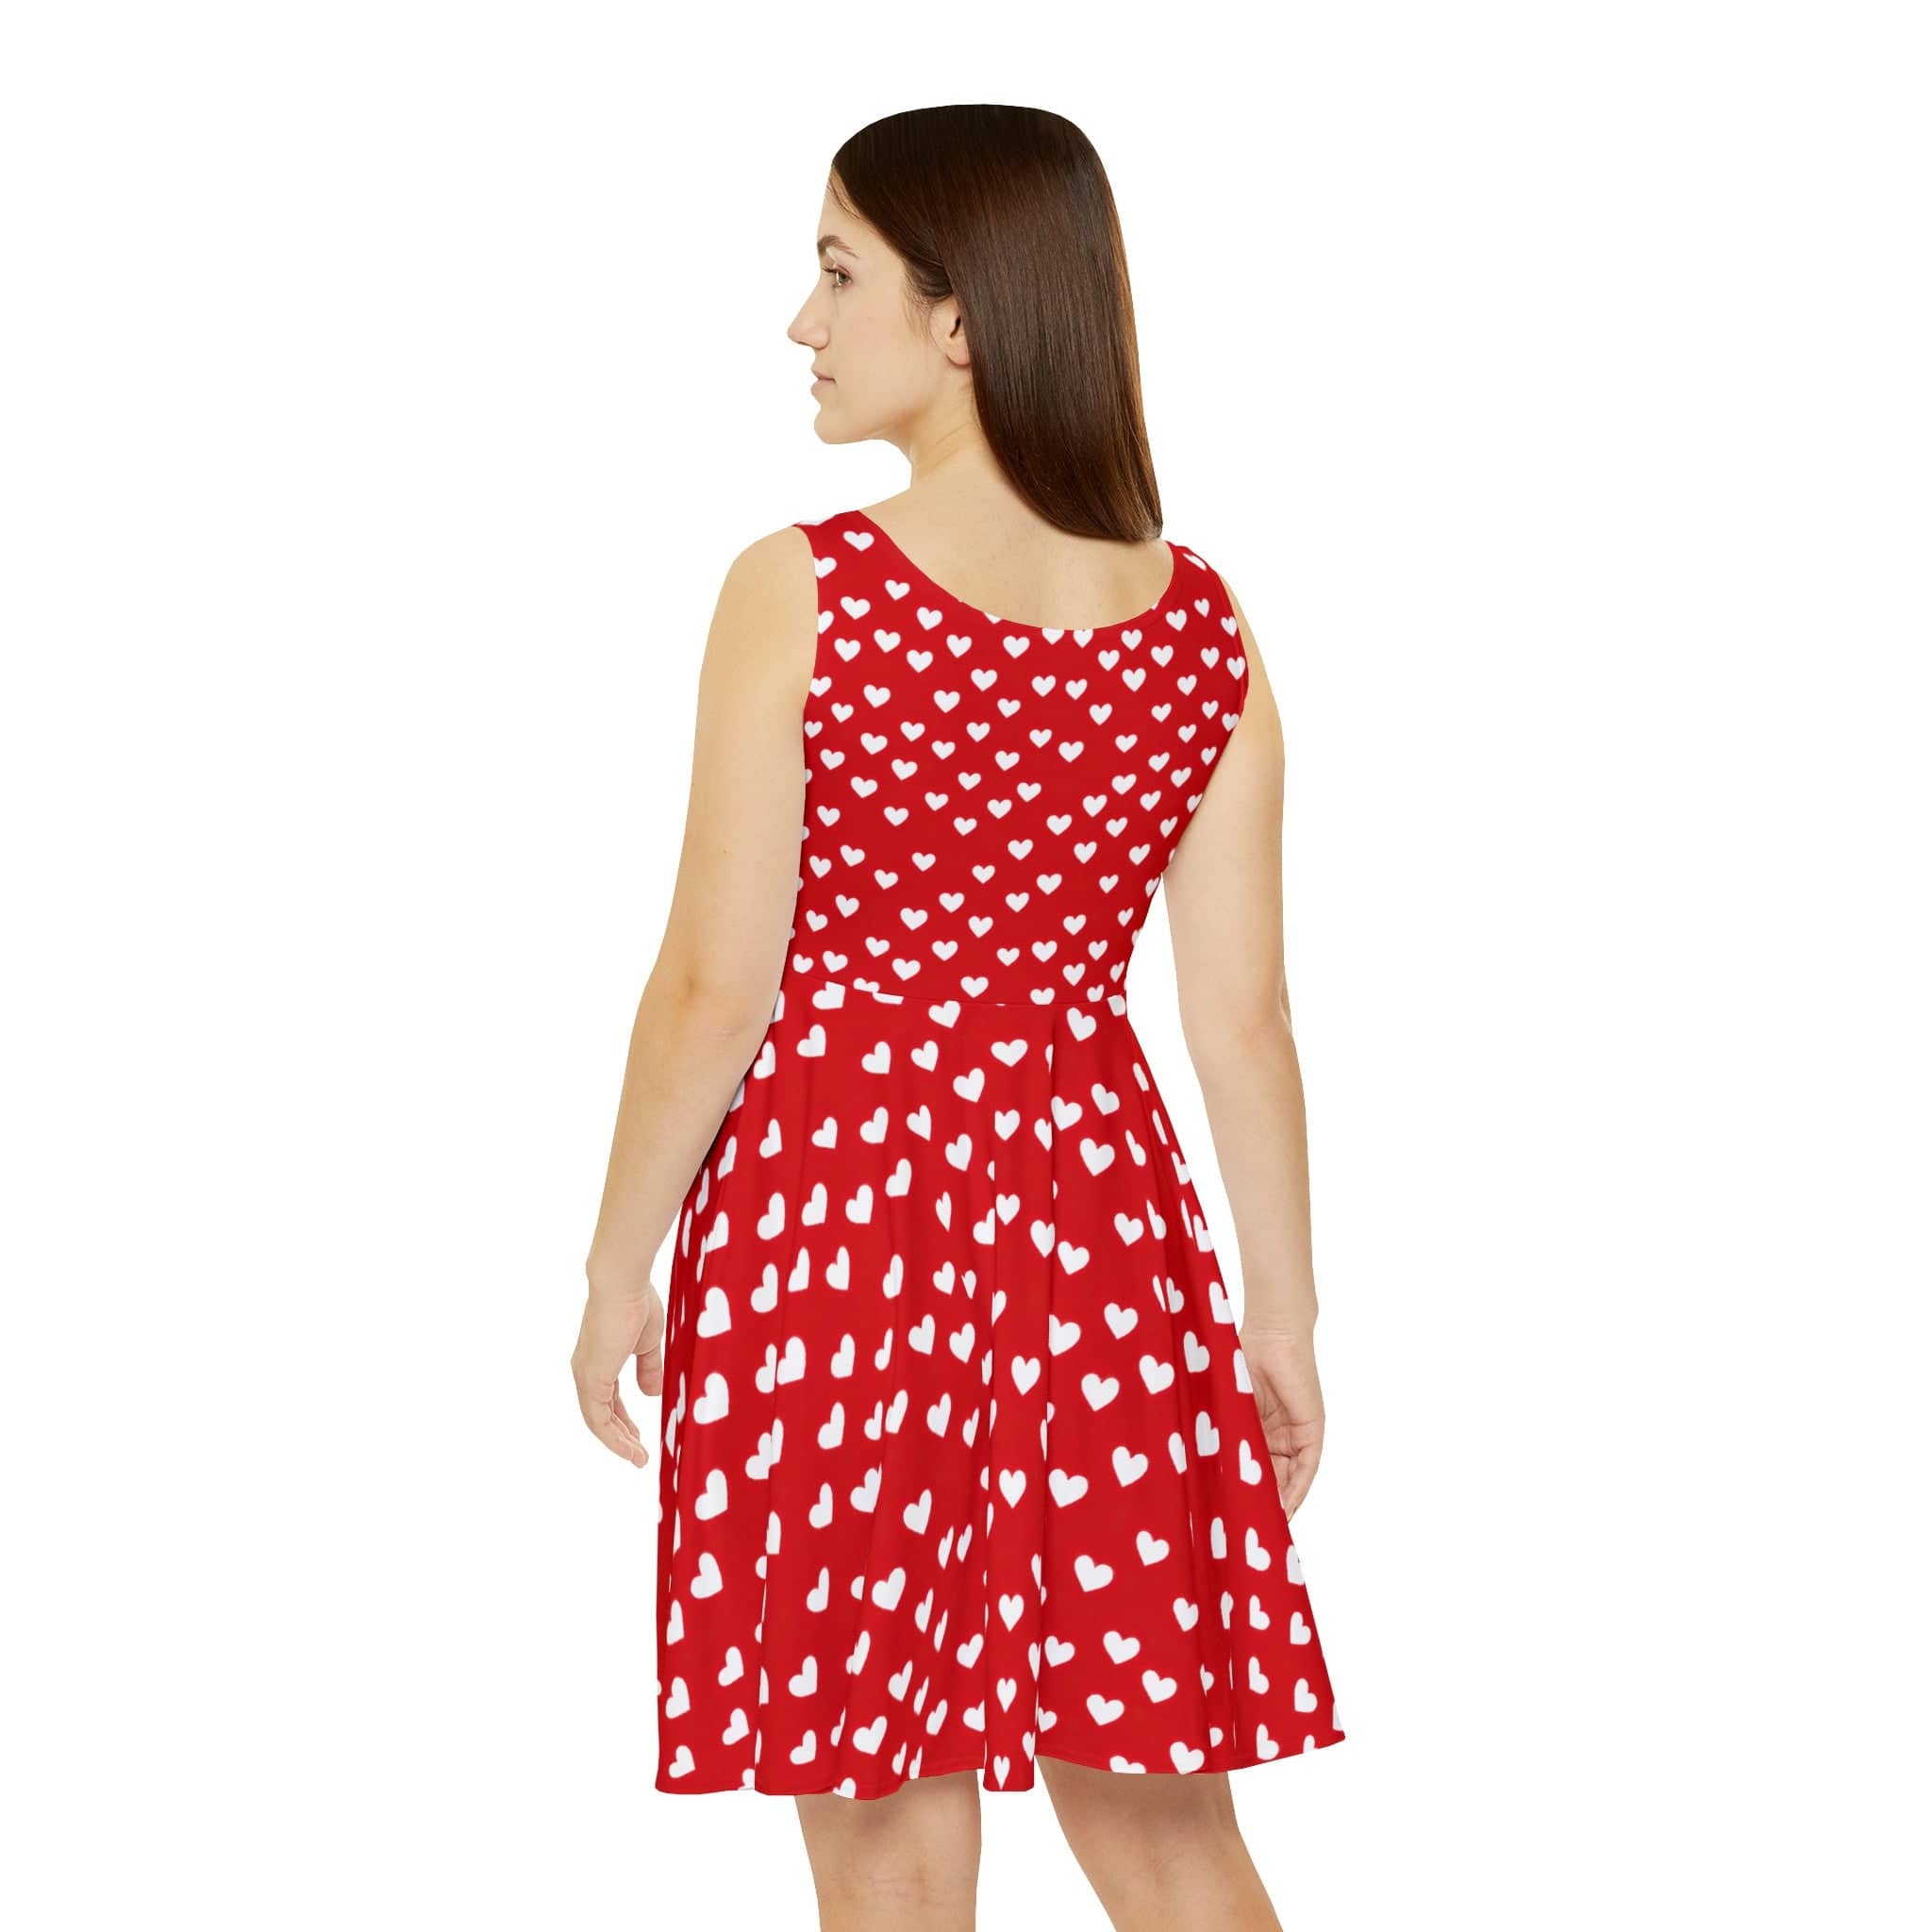 Heartfelt Whimsy Sleeveless Dress